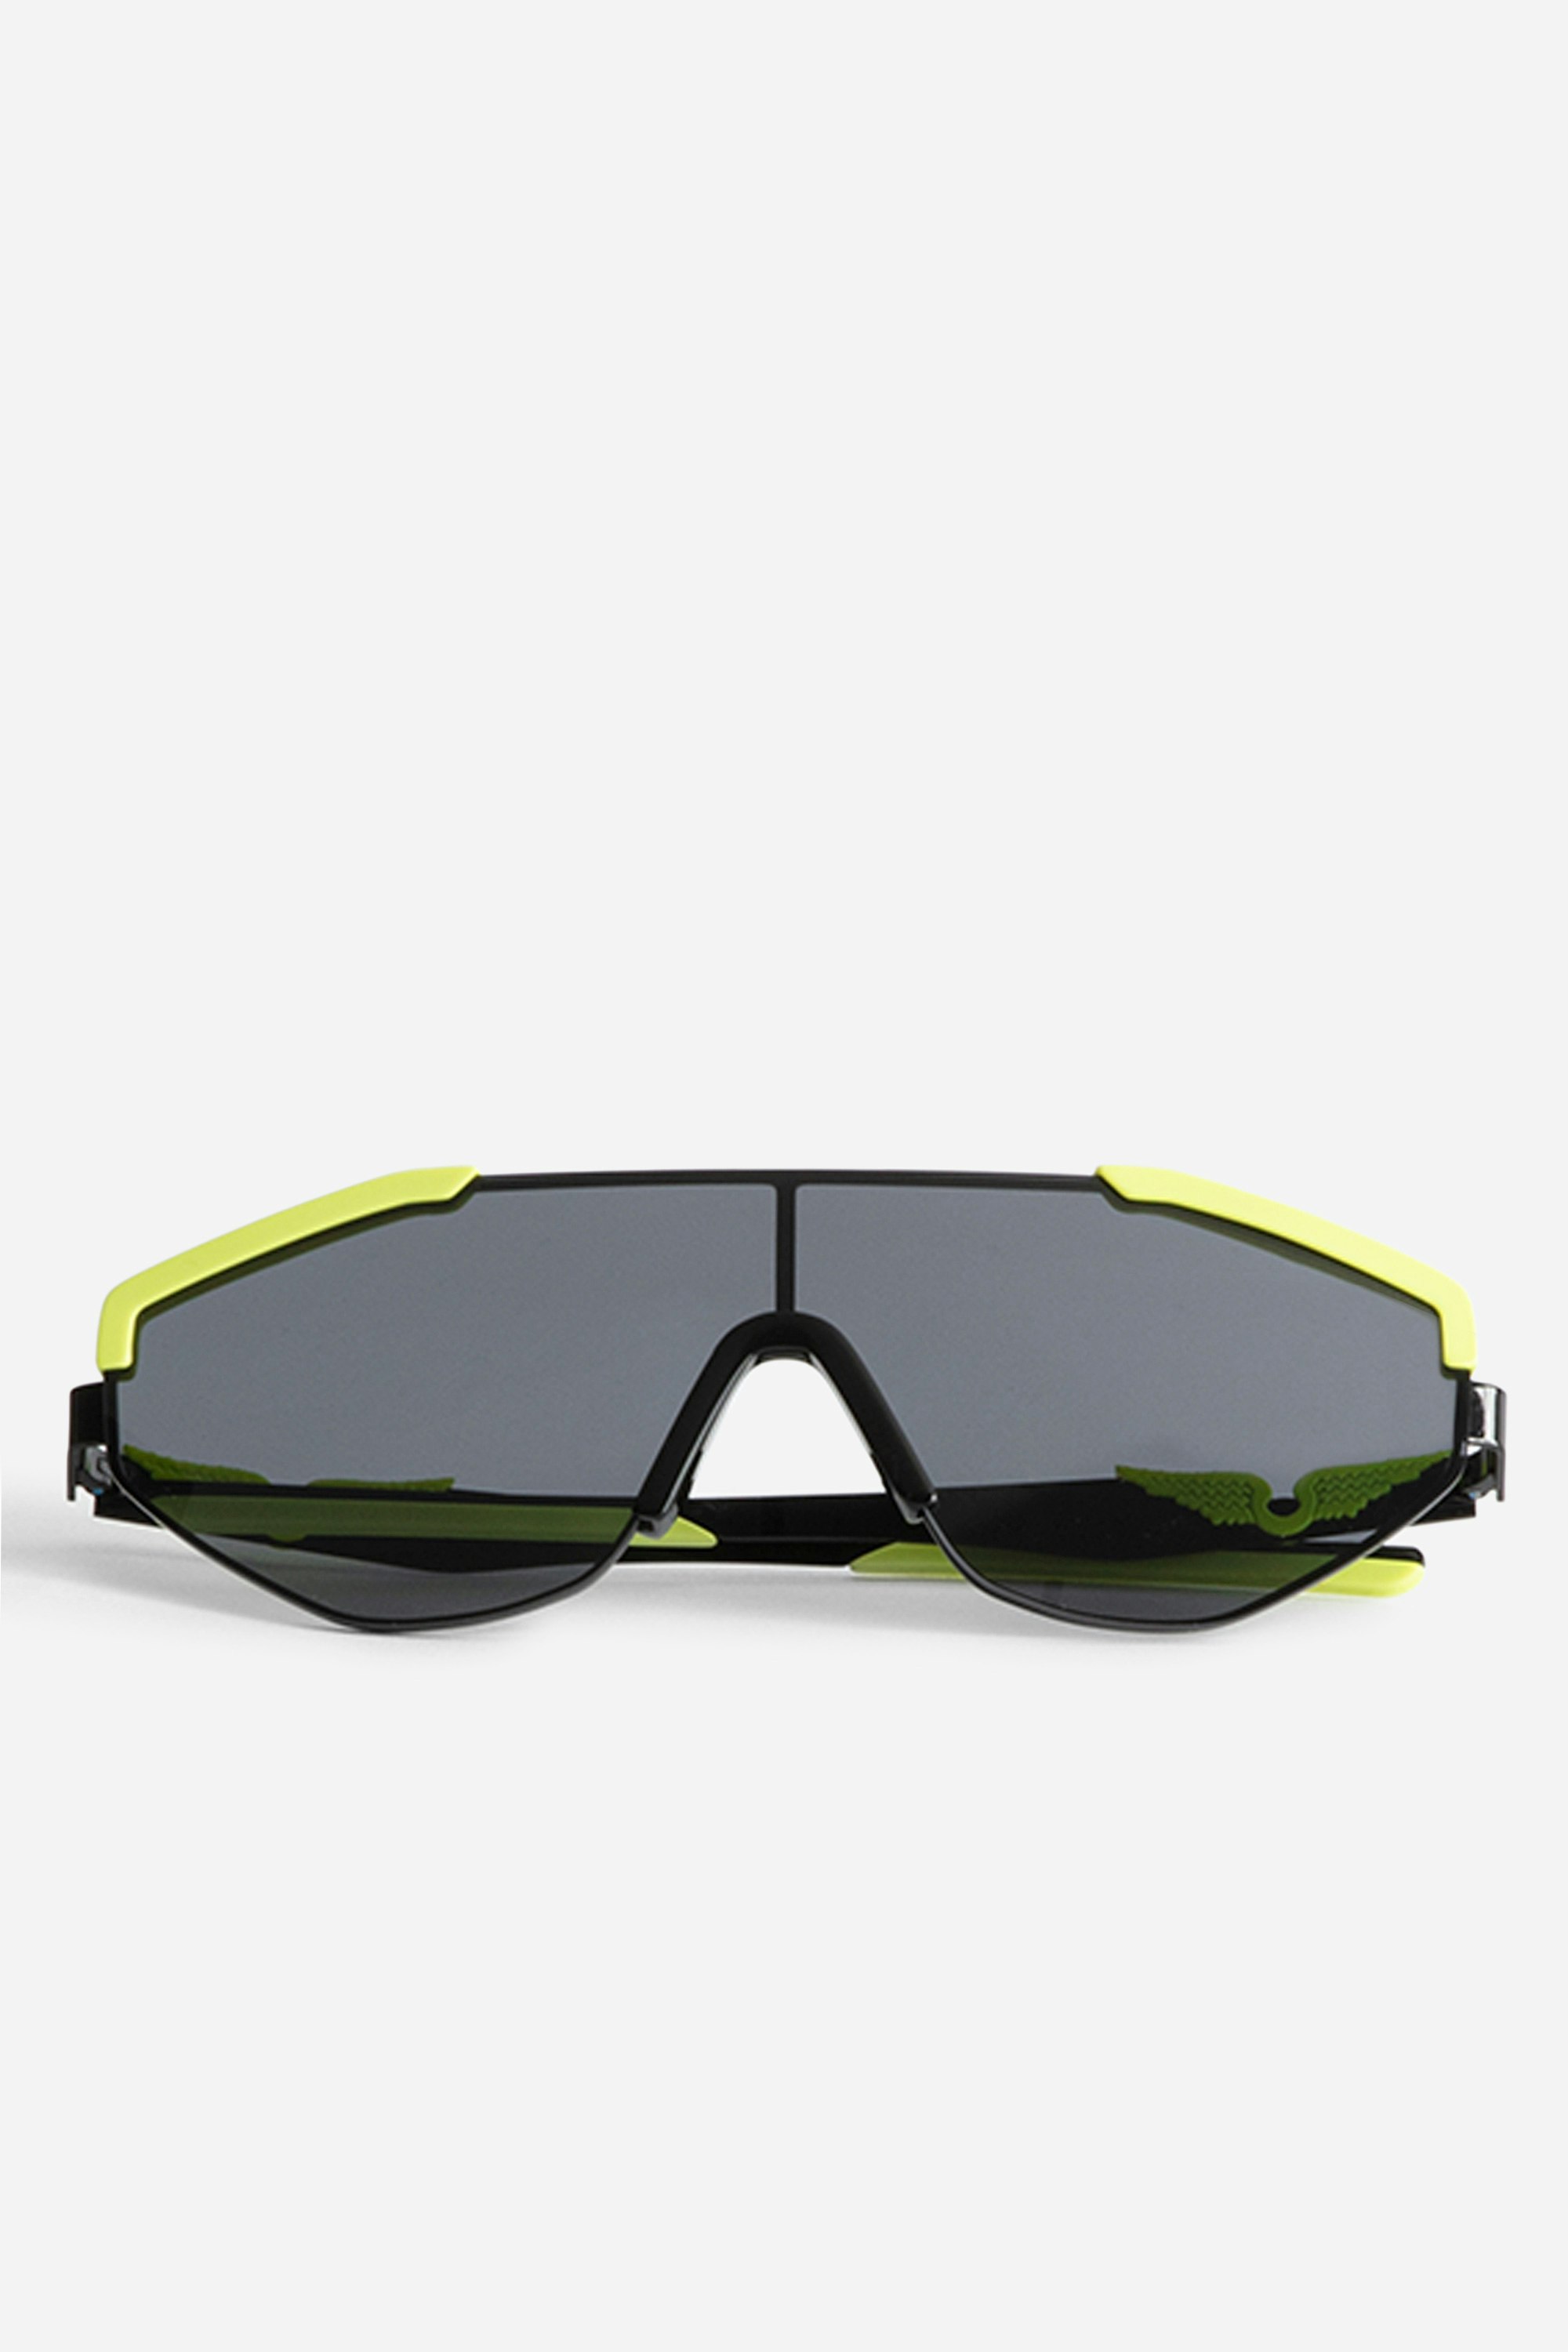 Occhiali da Sole ZV23H9 Fashion Show - Occhiali da sole futuristi della collezione FW23 con le emblematiche ali sulle stanghette.